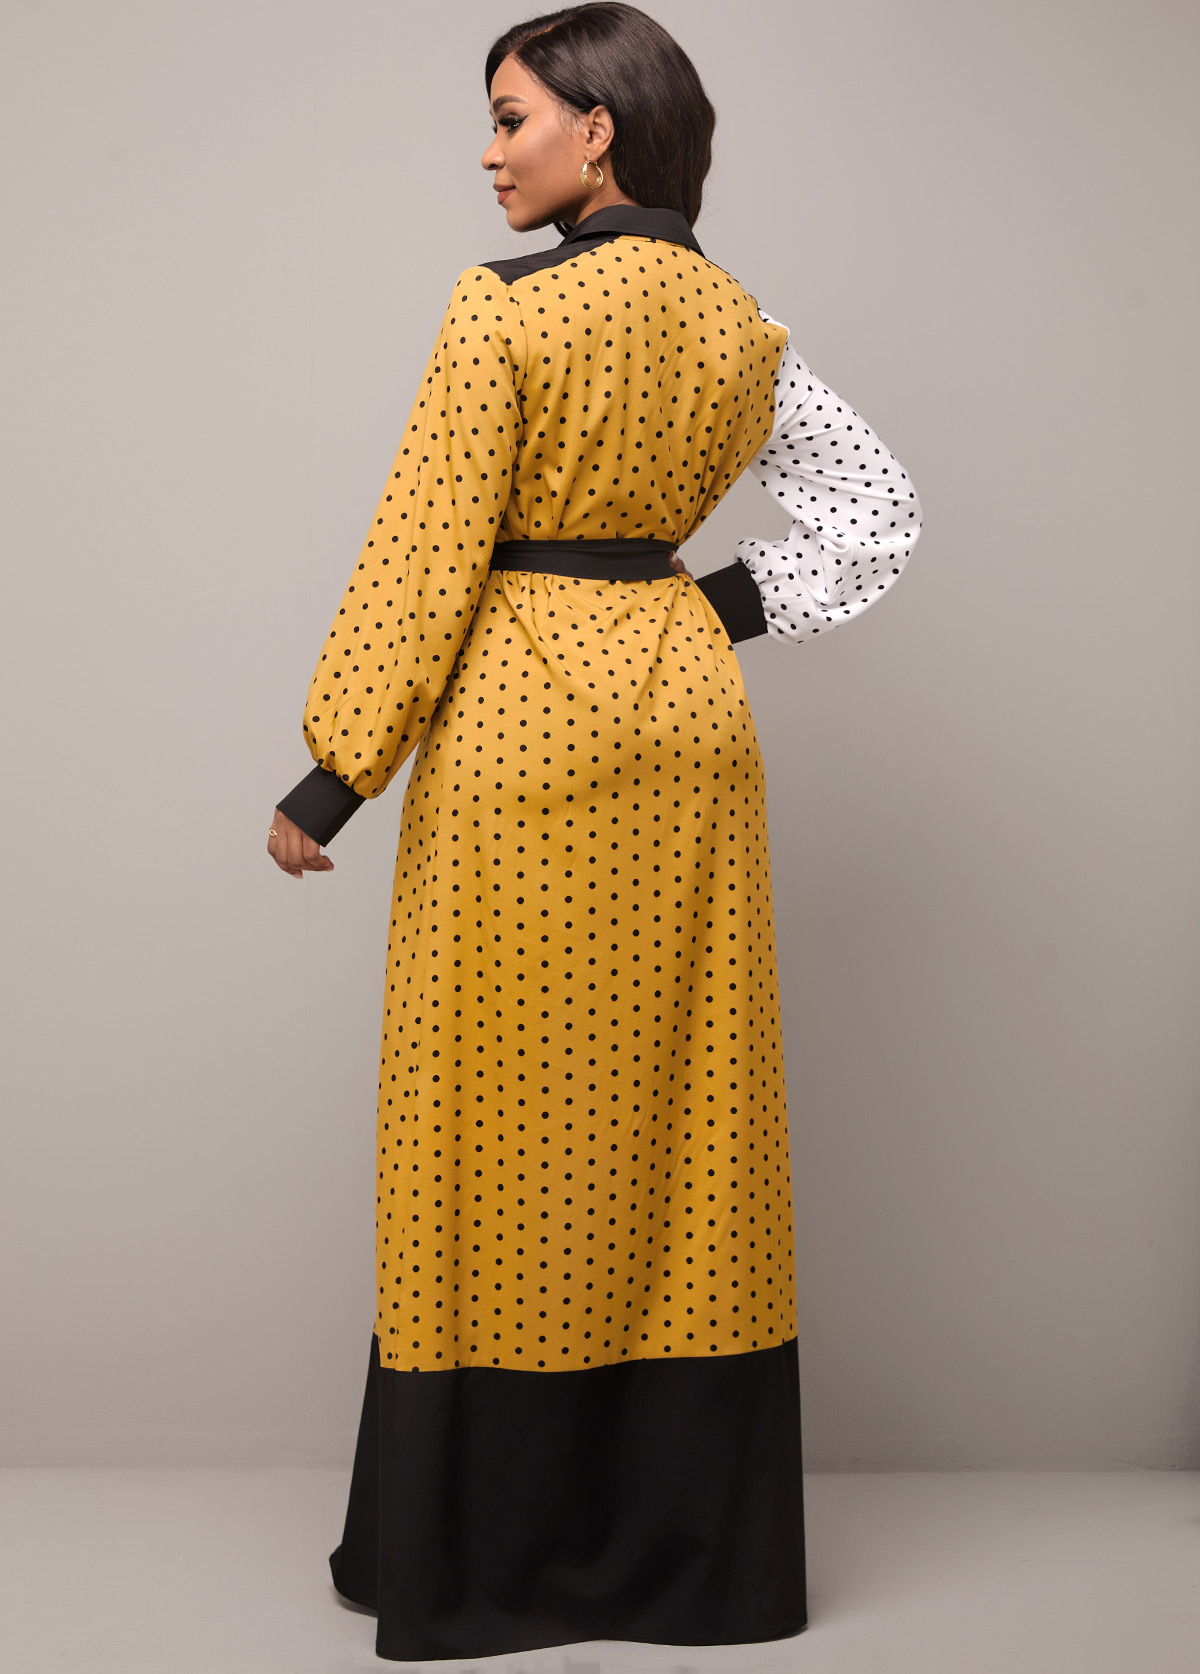 Pocket Polka Dot Color Block Belted Dress